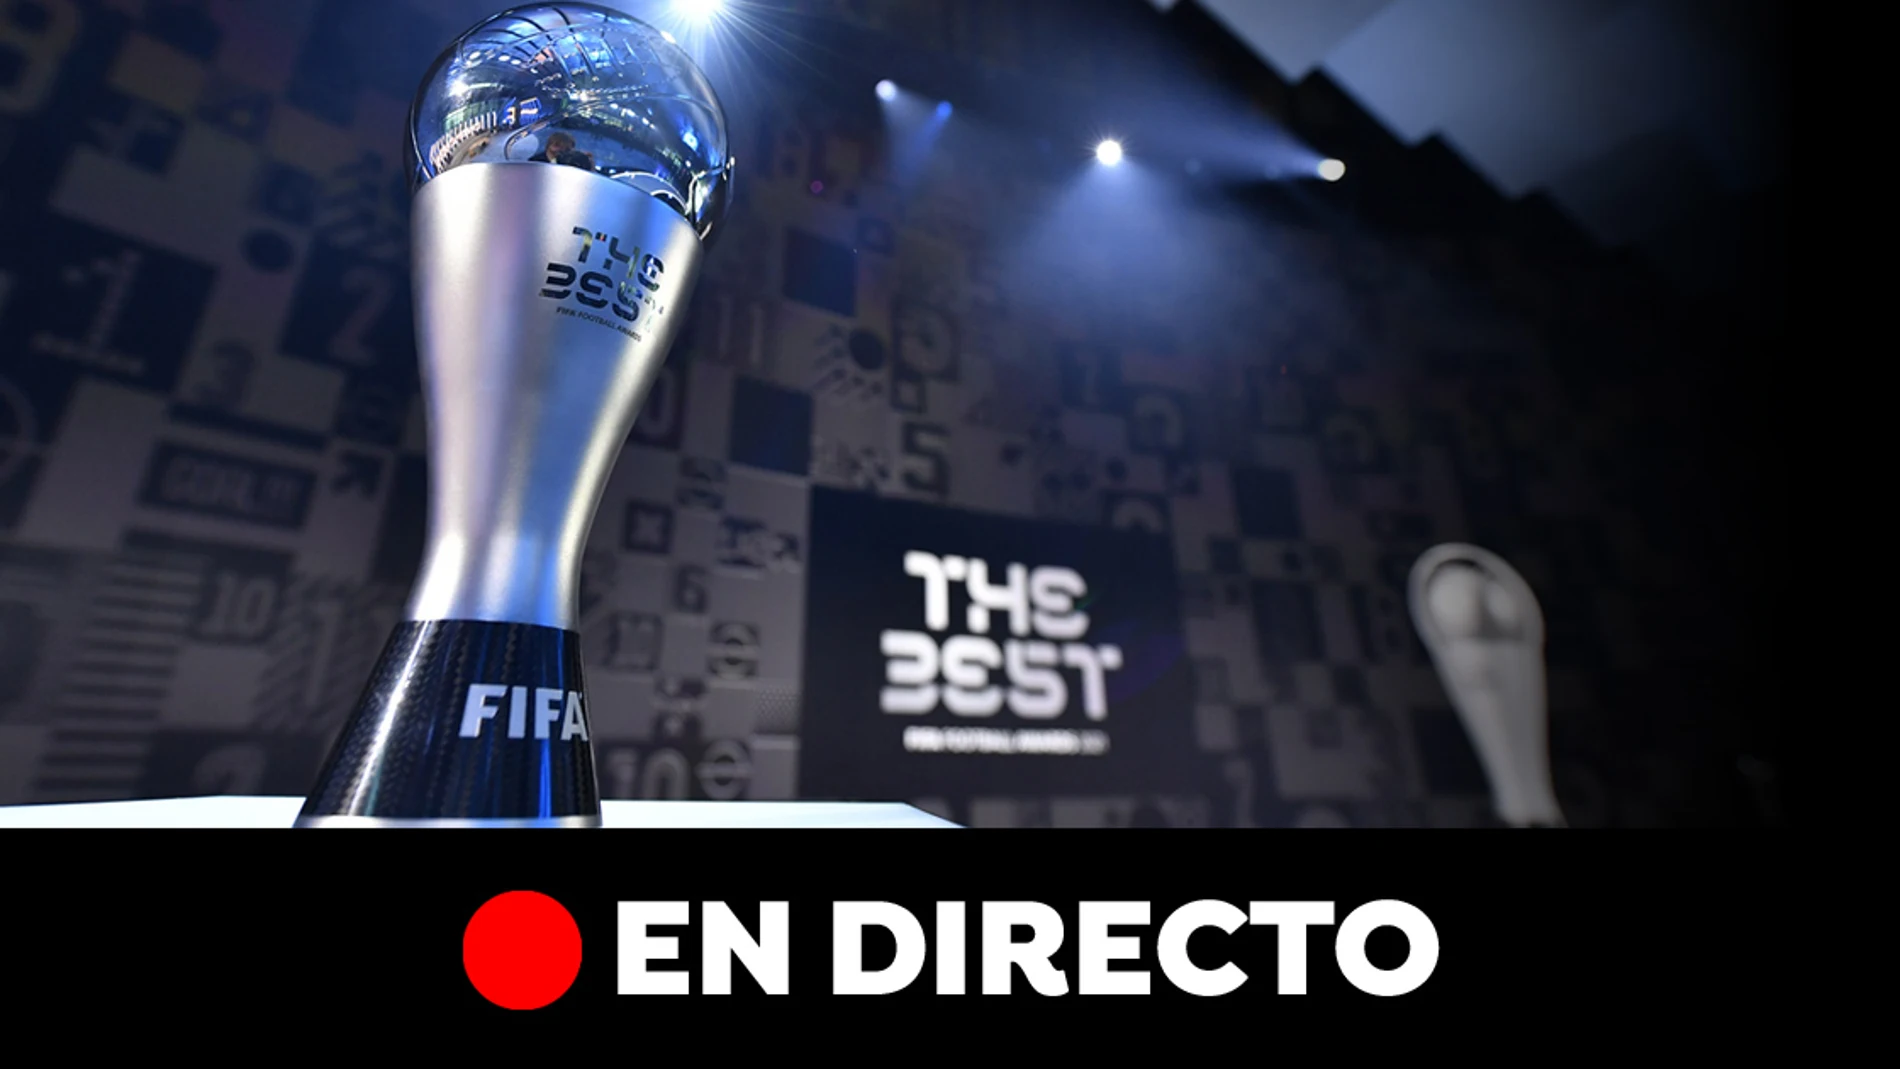 Imagen del trofeo The Best 2022 de la FIFA